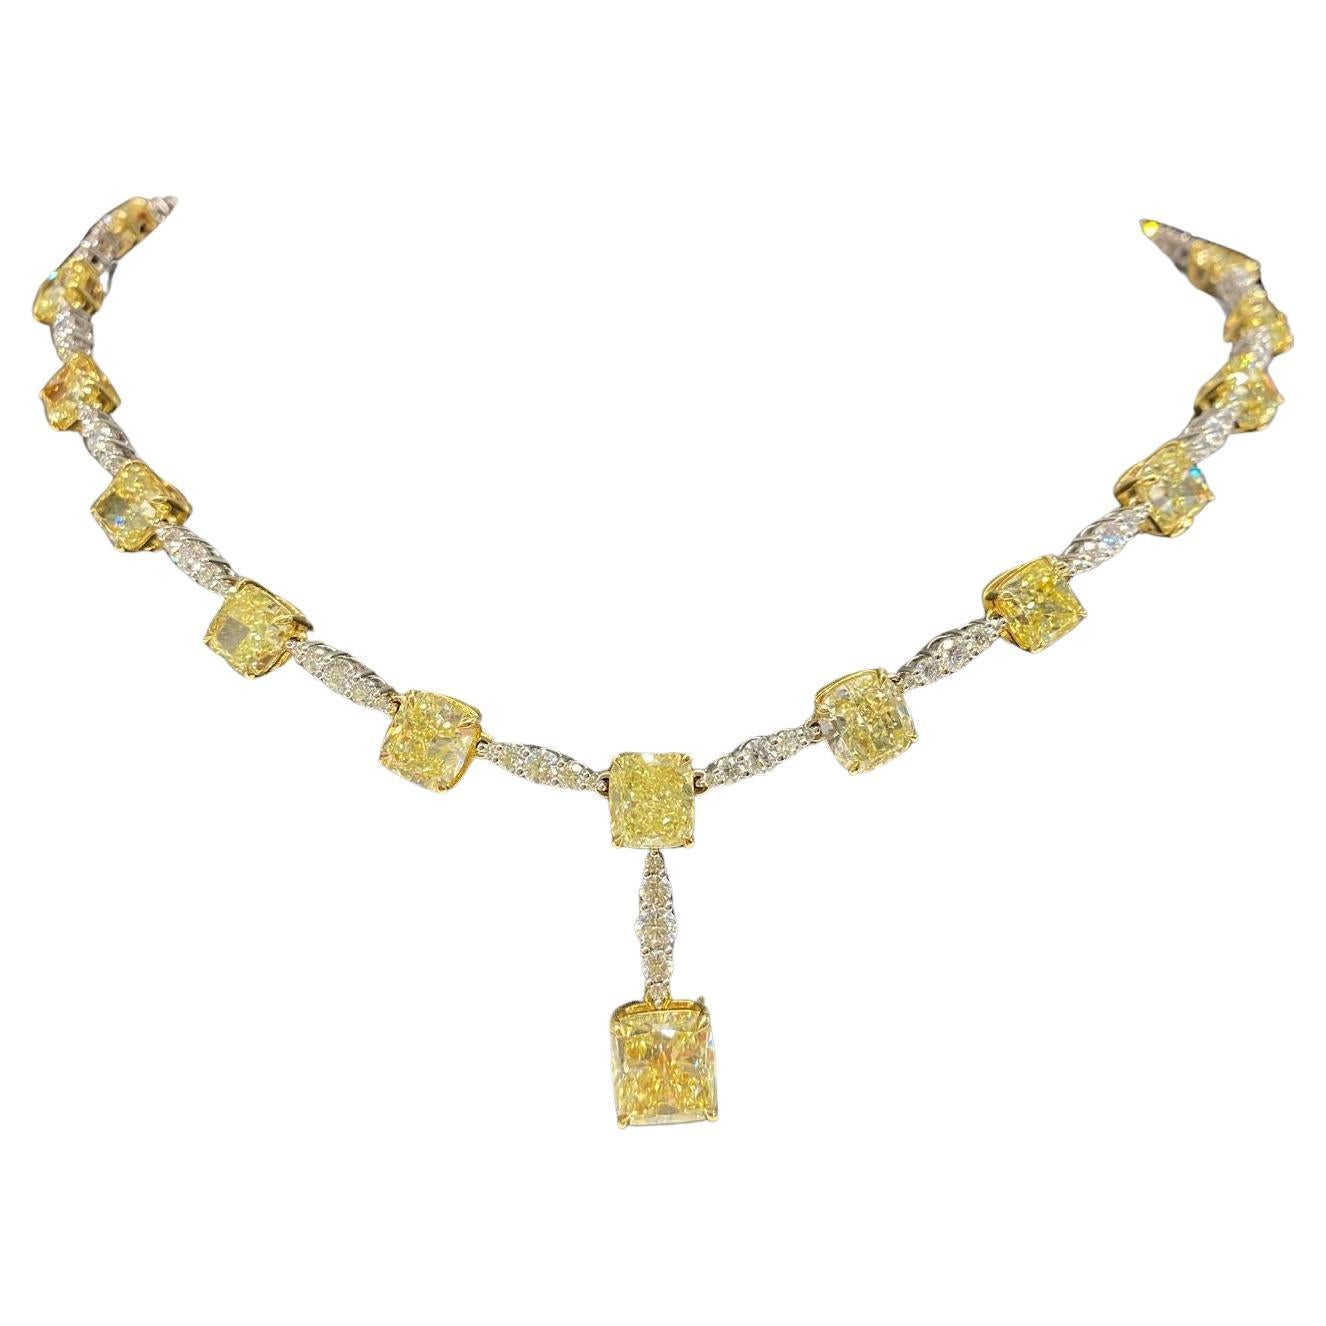  Luxueux collier jaune fantaisie avec un superbe diamant central de 4ct !

Élevez votre style avec ce collier exquis, fabriqué à la perfection avec une attention inégalée aux détails.

Caractéristiques principales :

Brillance de la pièce maîtresse